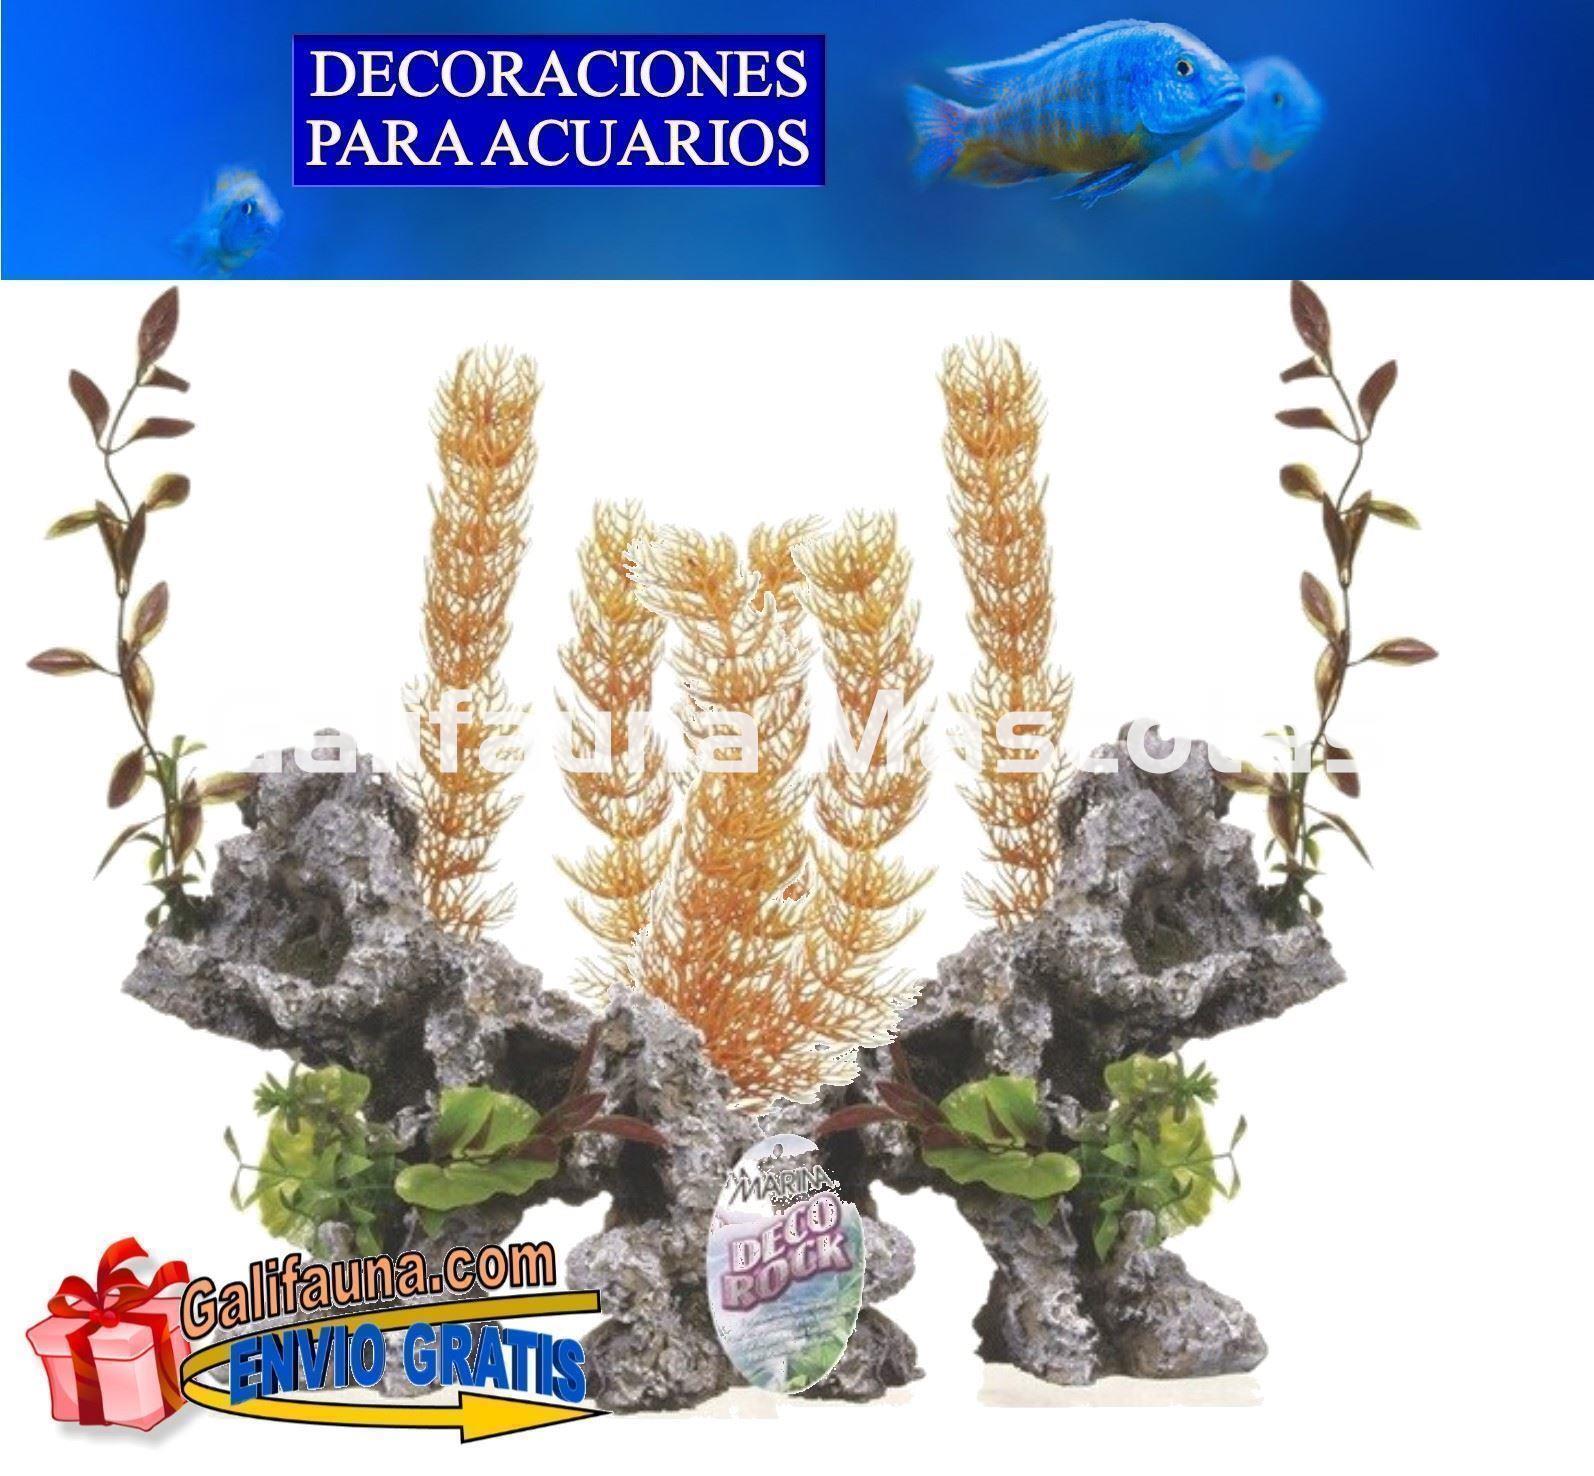 DOBLE Decoración GIGANTE rocas con plantas. Ornamento especial para acuarios grandes. - Imagen 1